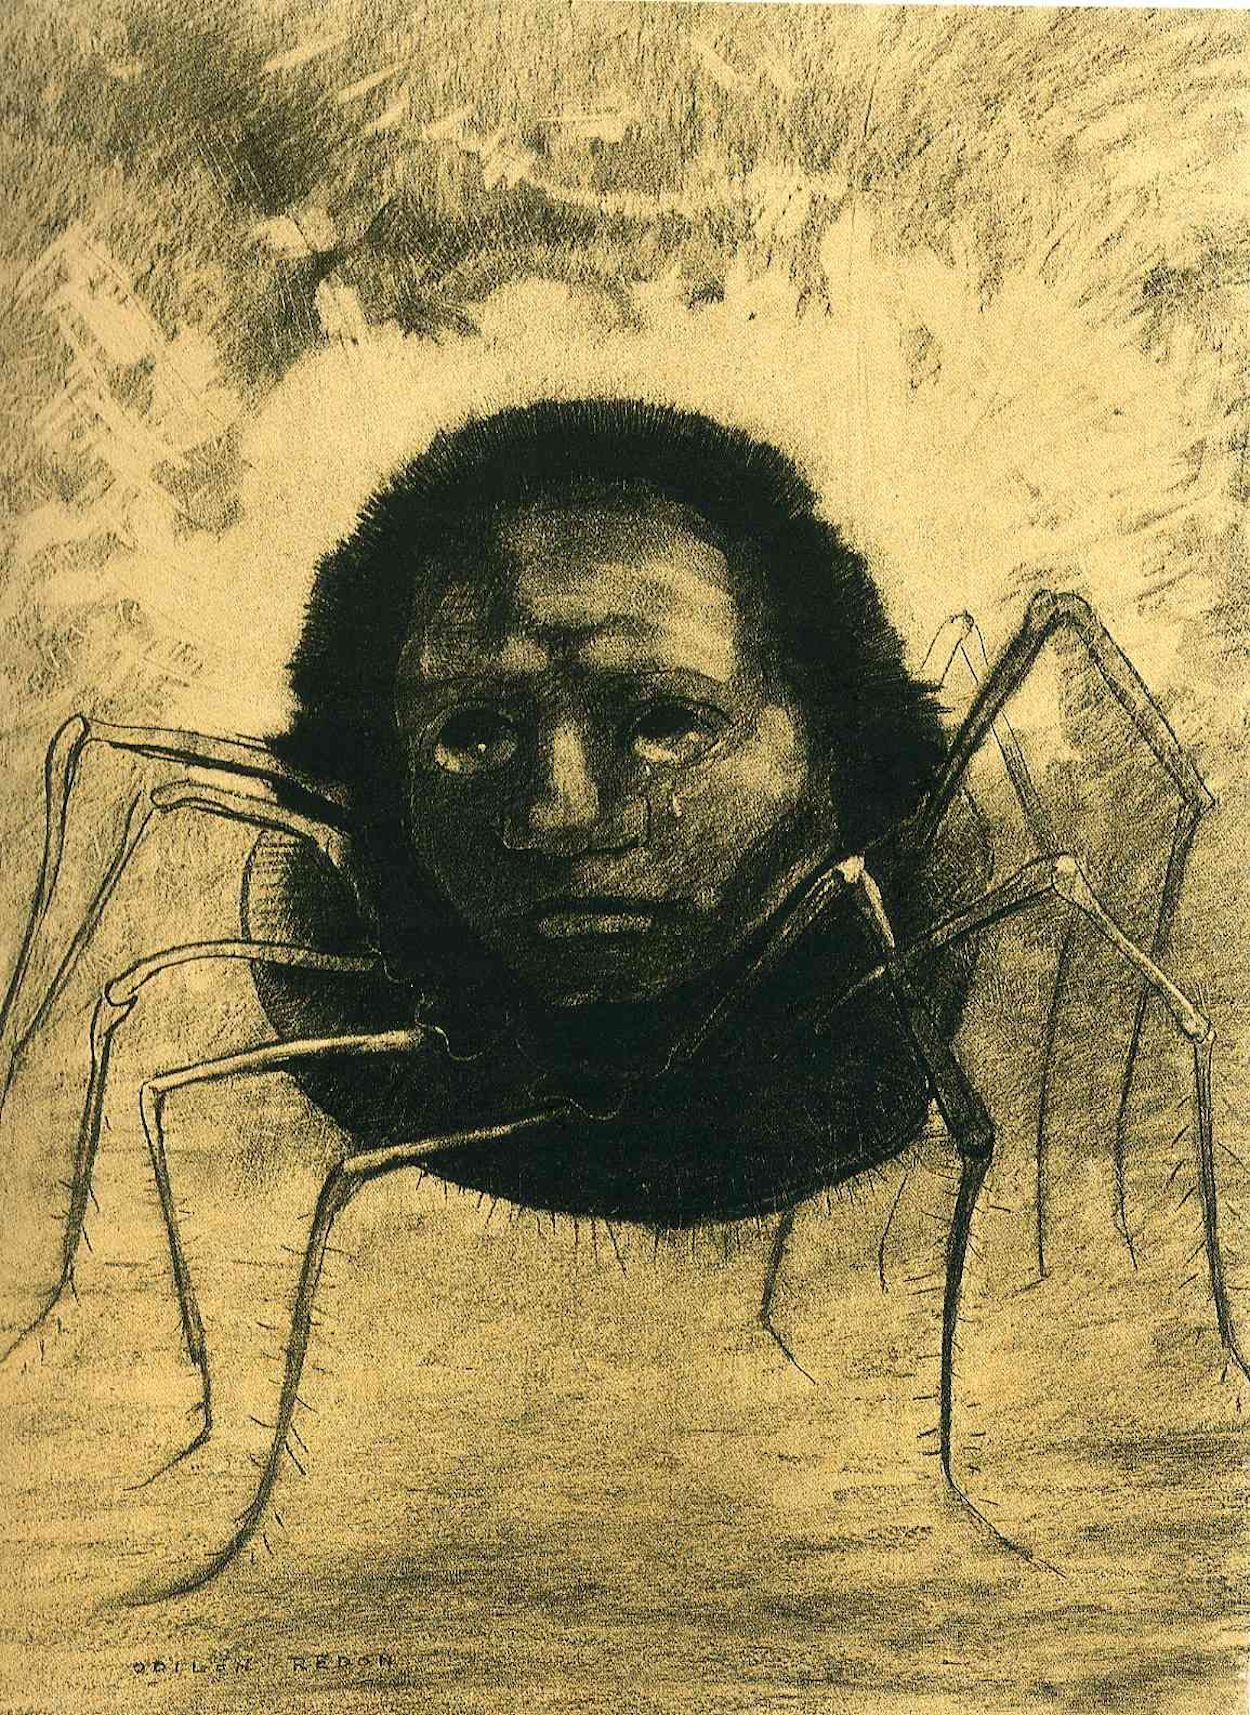 A Aranha a Chorar by Odilon Redon - 1881 - 49 x 32.5 cm coleção privada